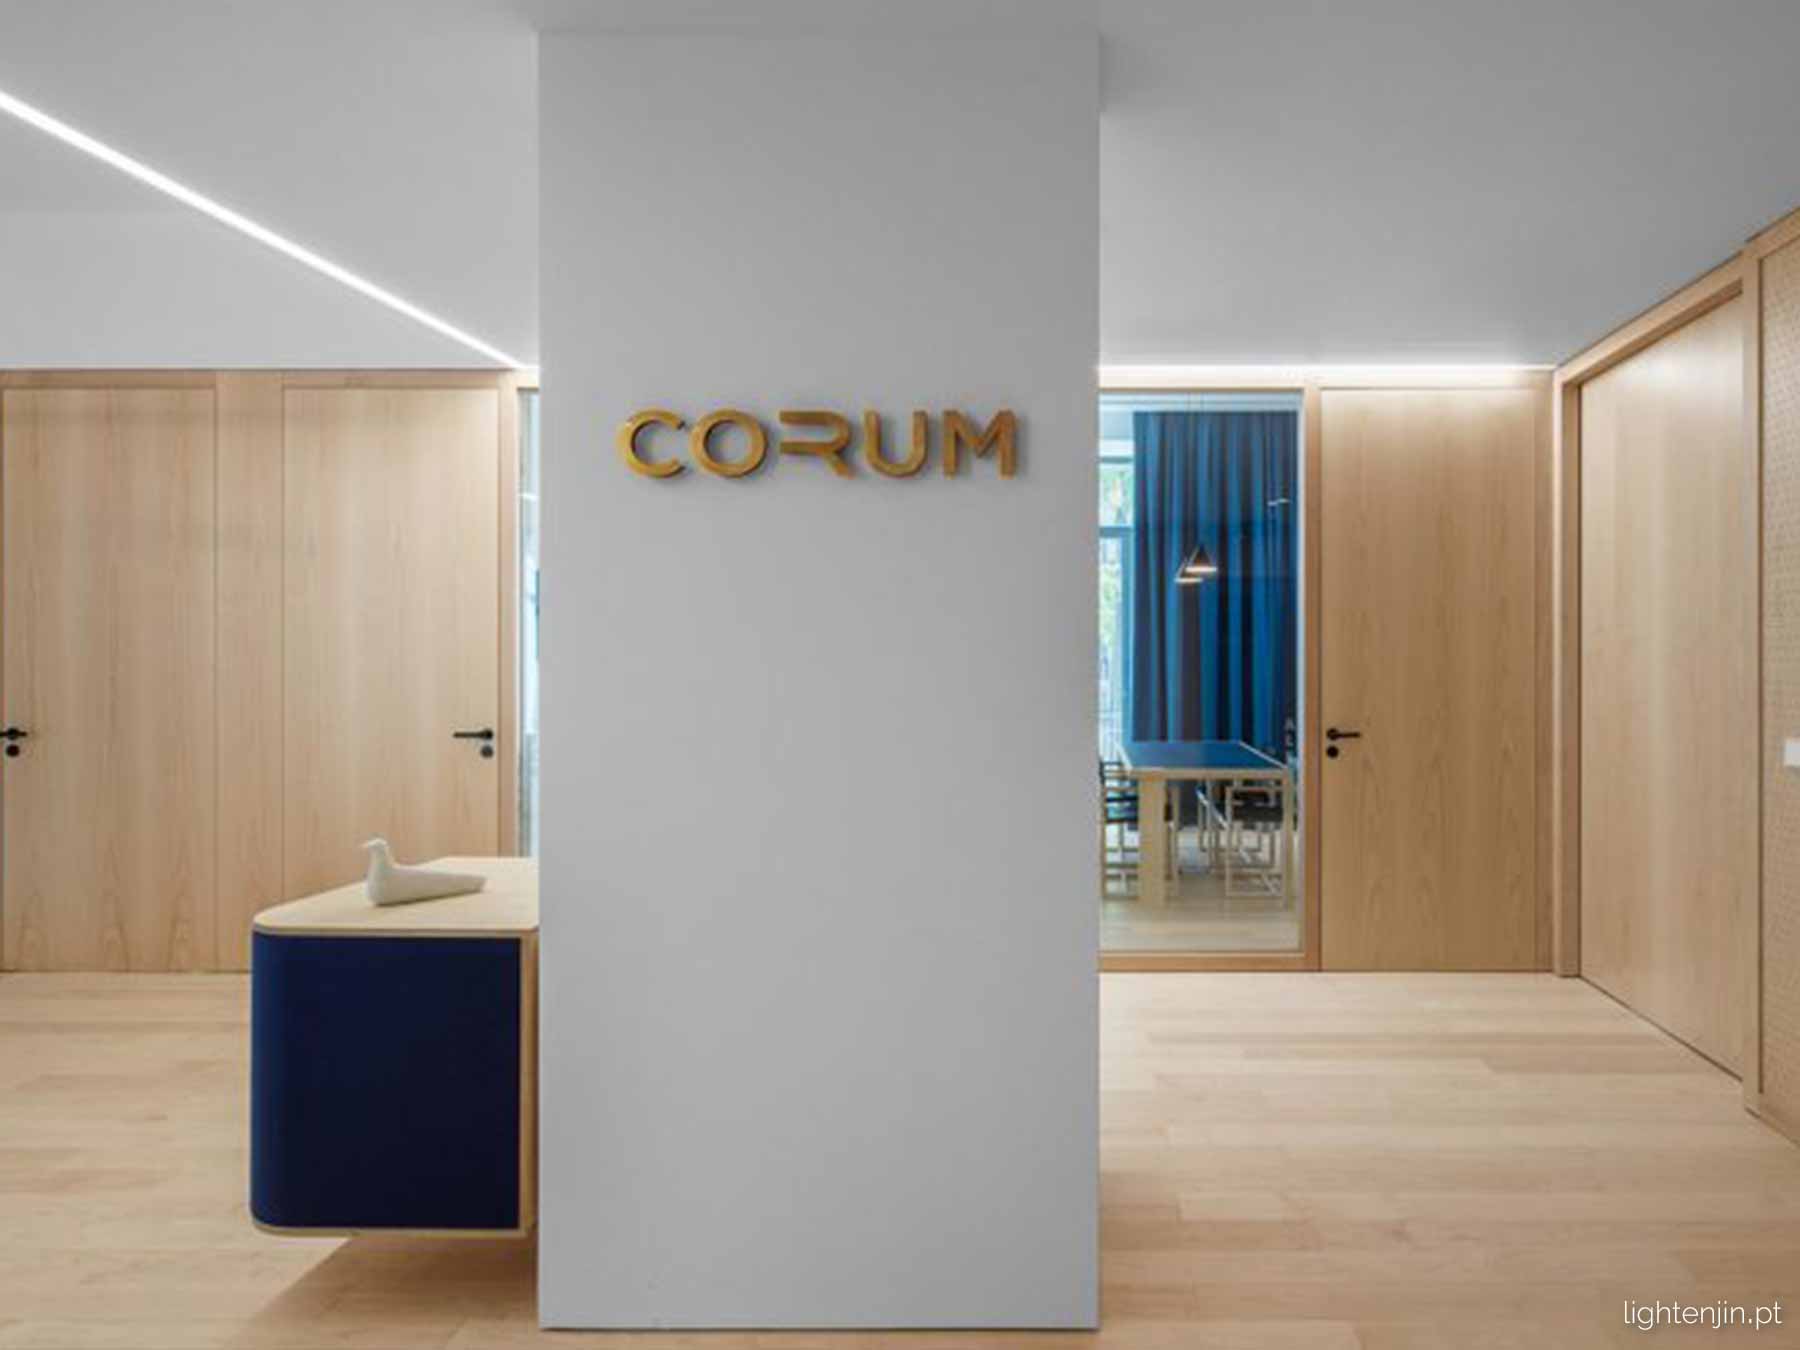 Escritórios Corum Investments - Lisboa